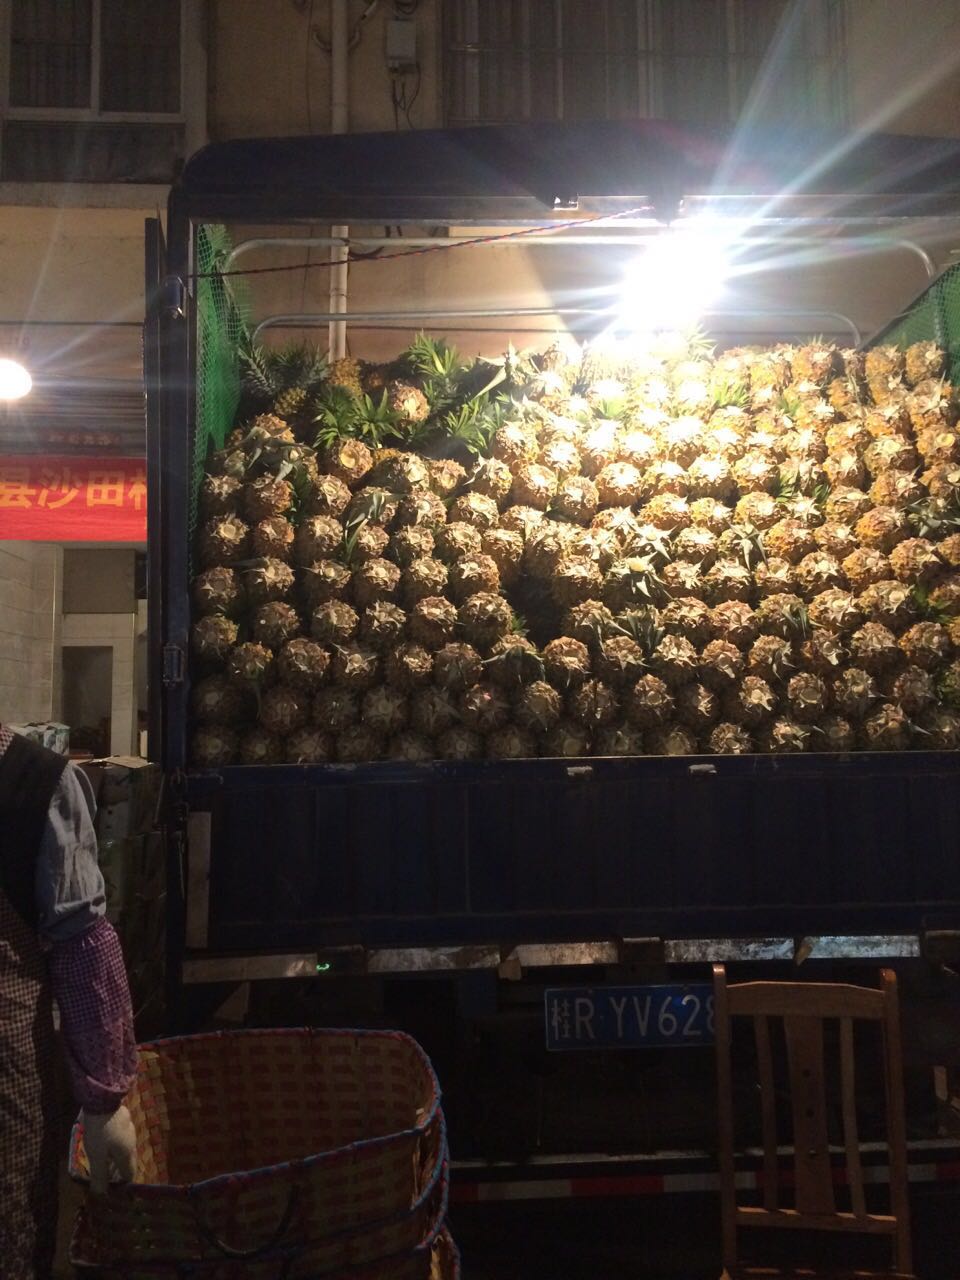 菠萝代销代购菠萝批发广西贵港市水果代销菠萝供应商菠萝代购